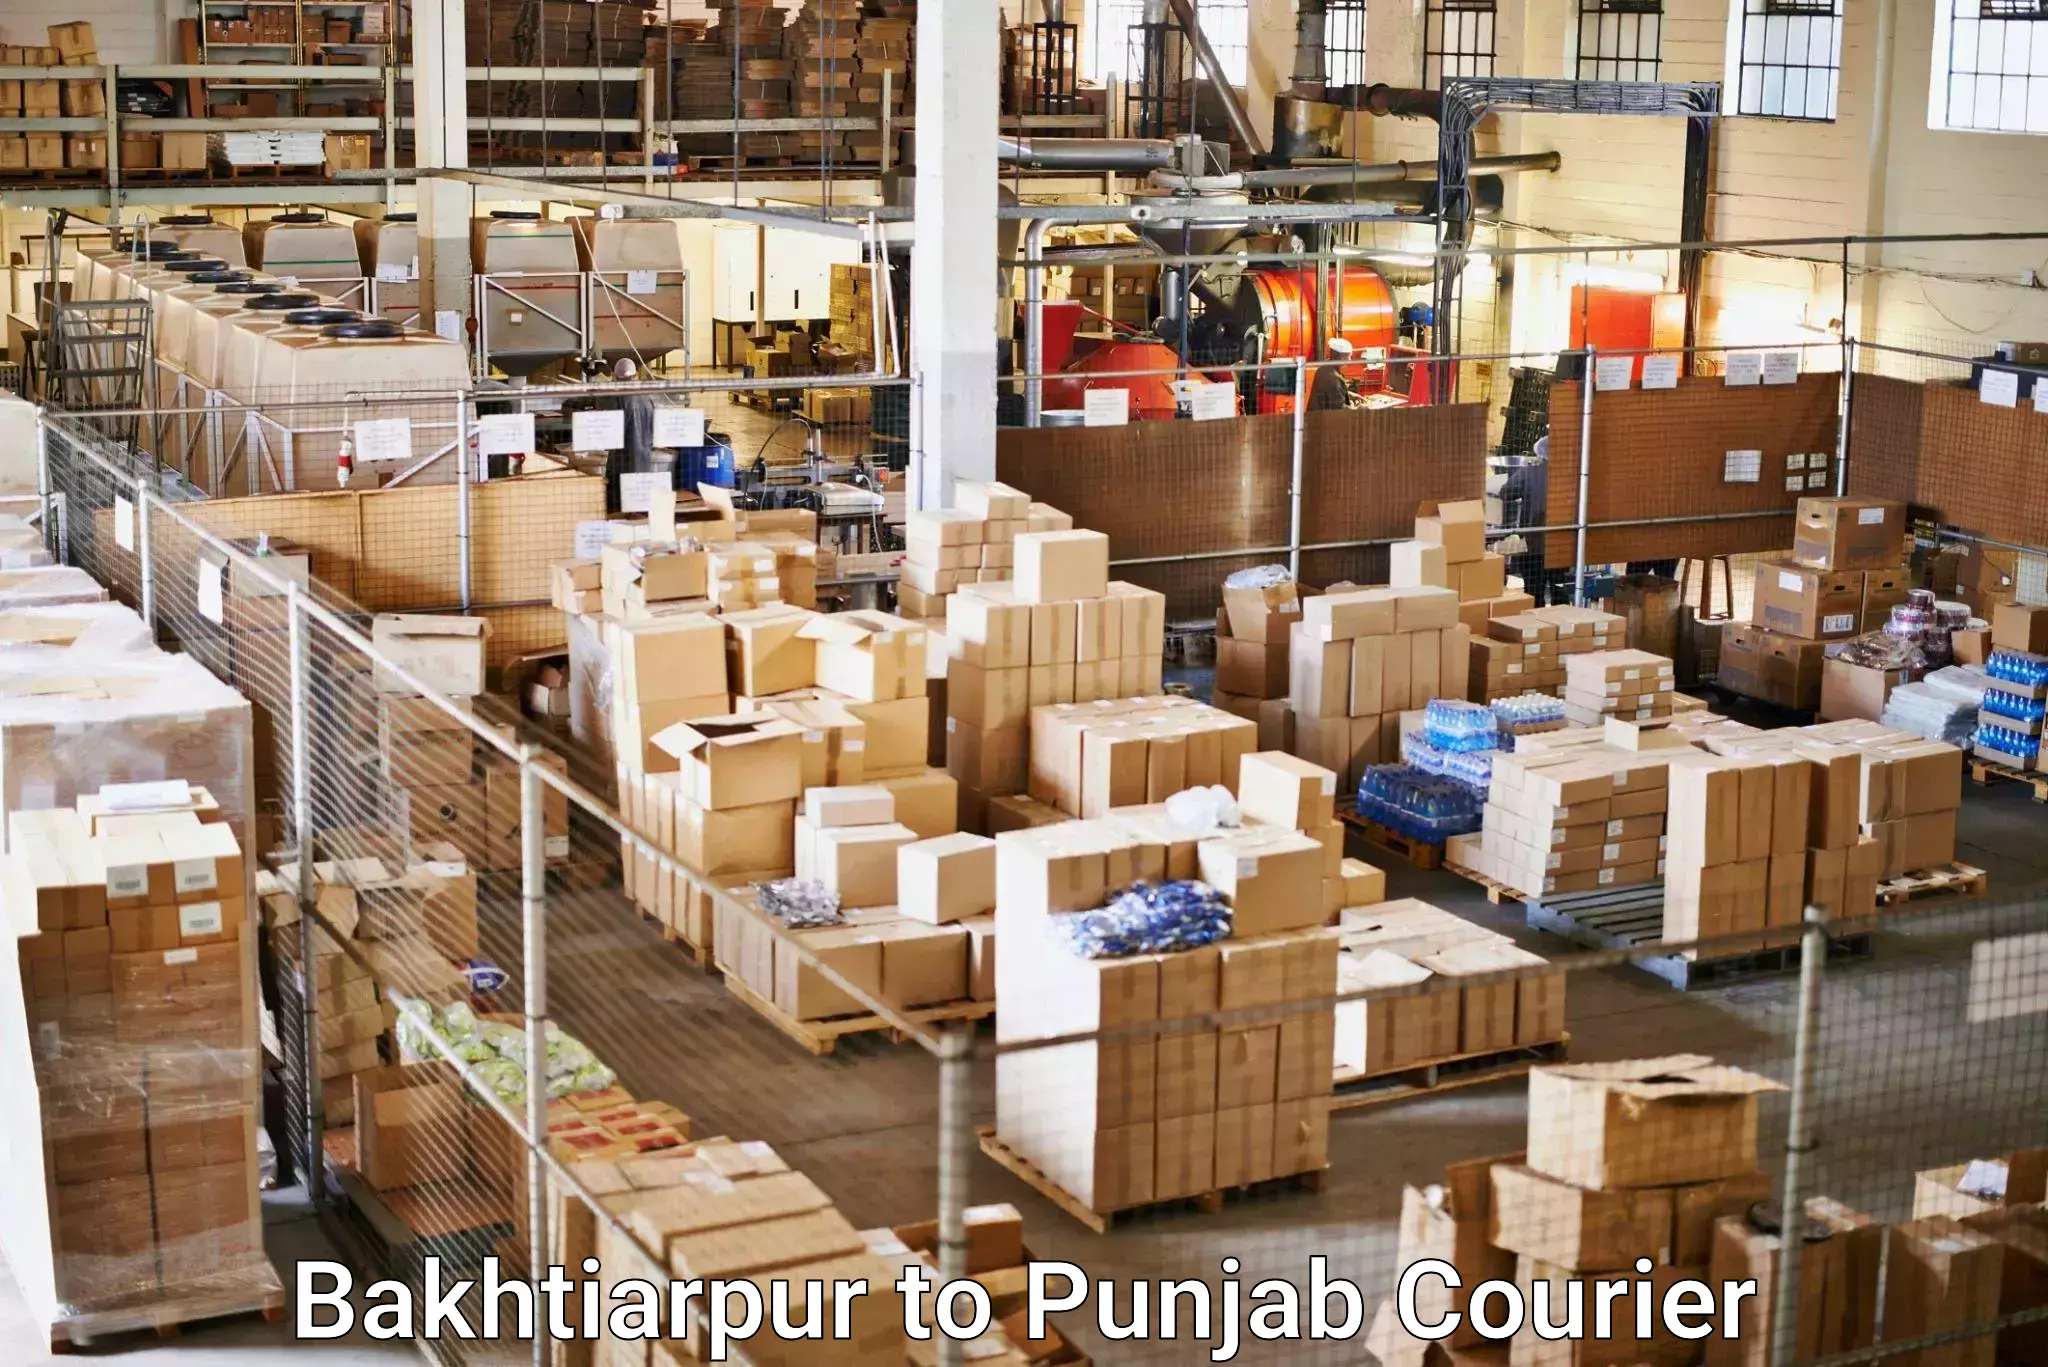 Courier service comparison Bakhtiarpur to Kapurthala